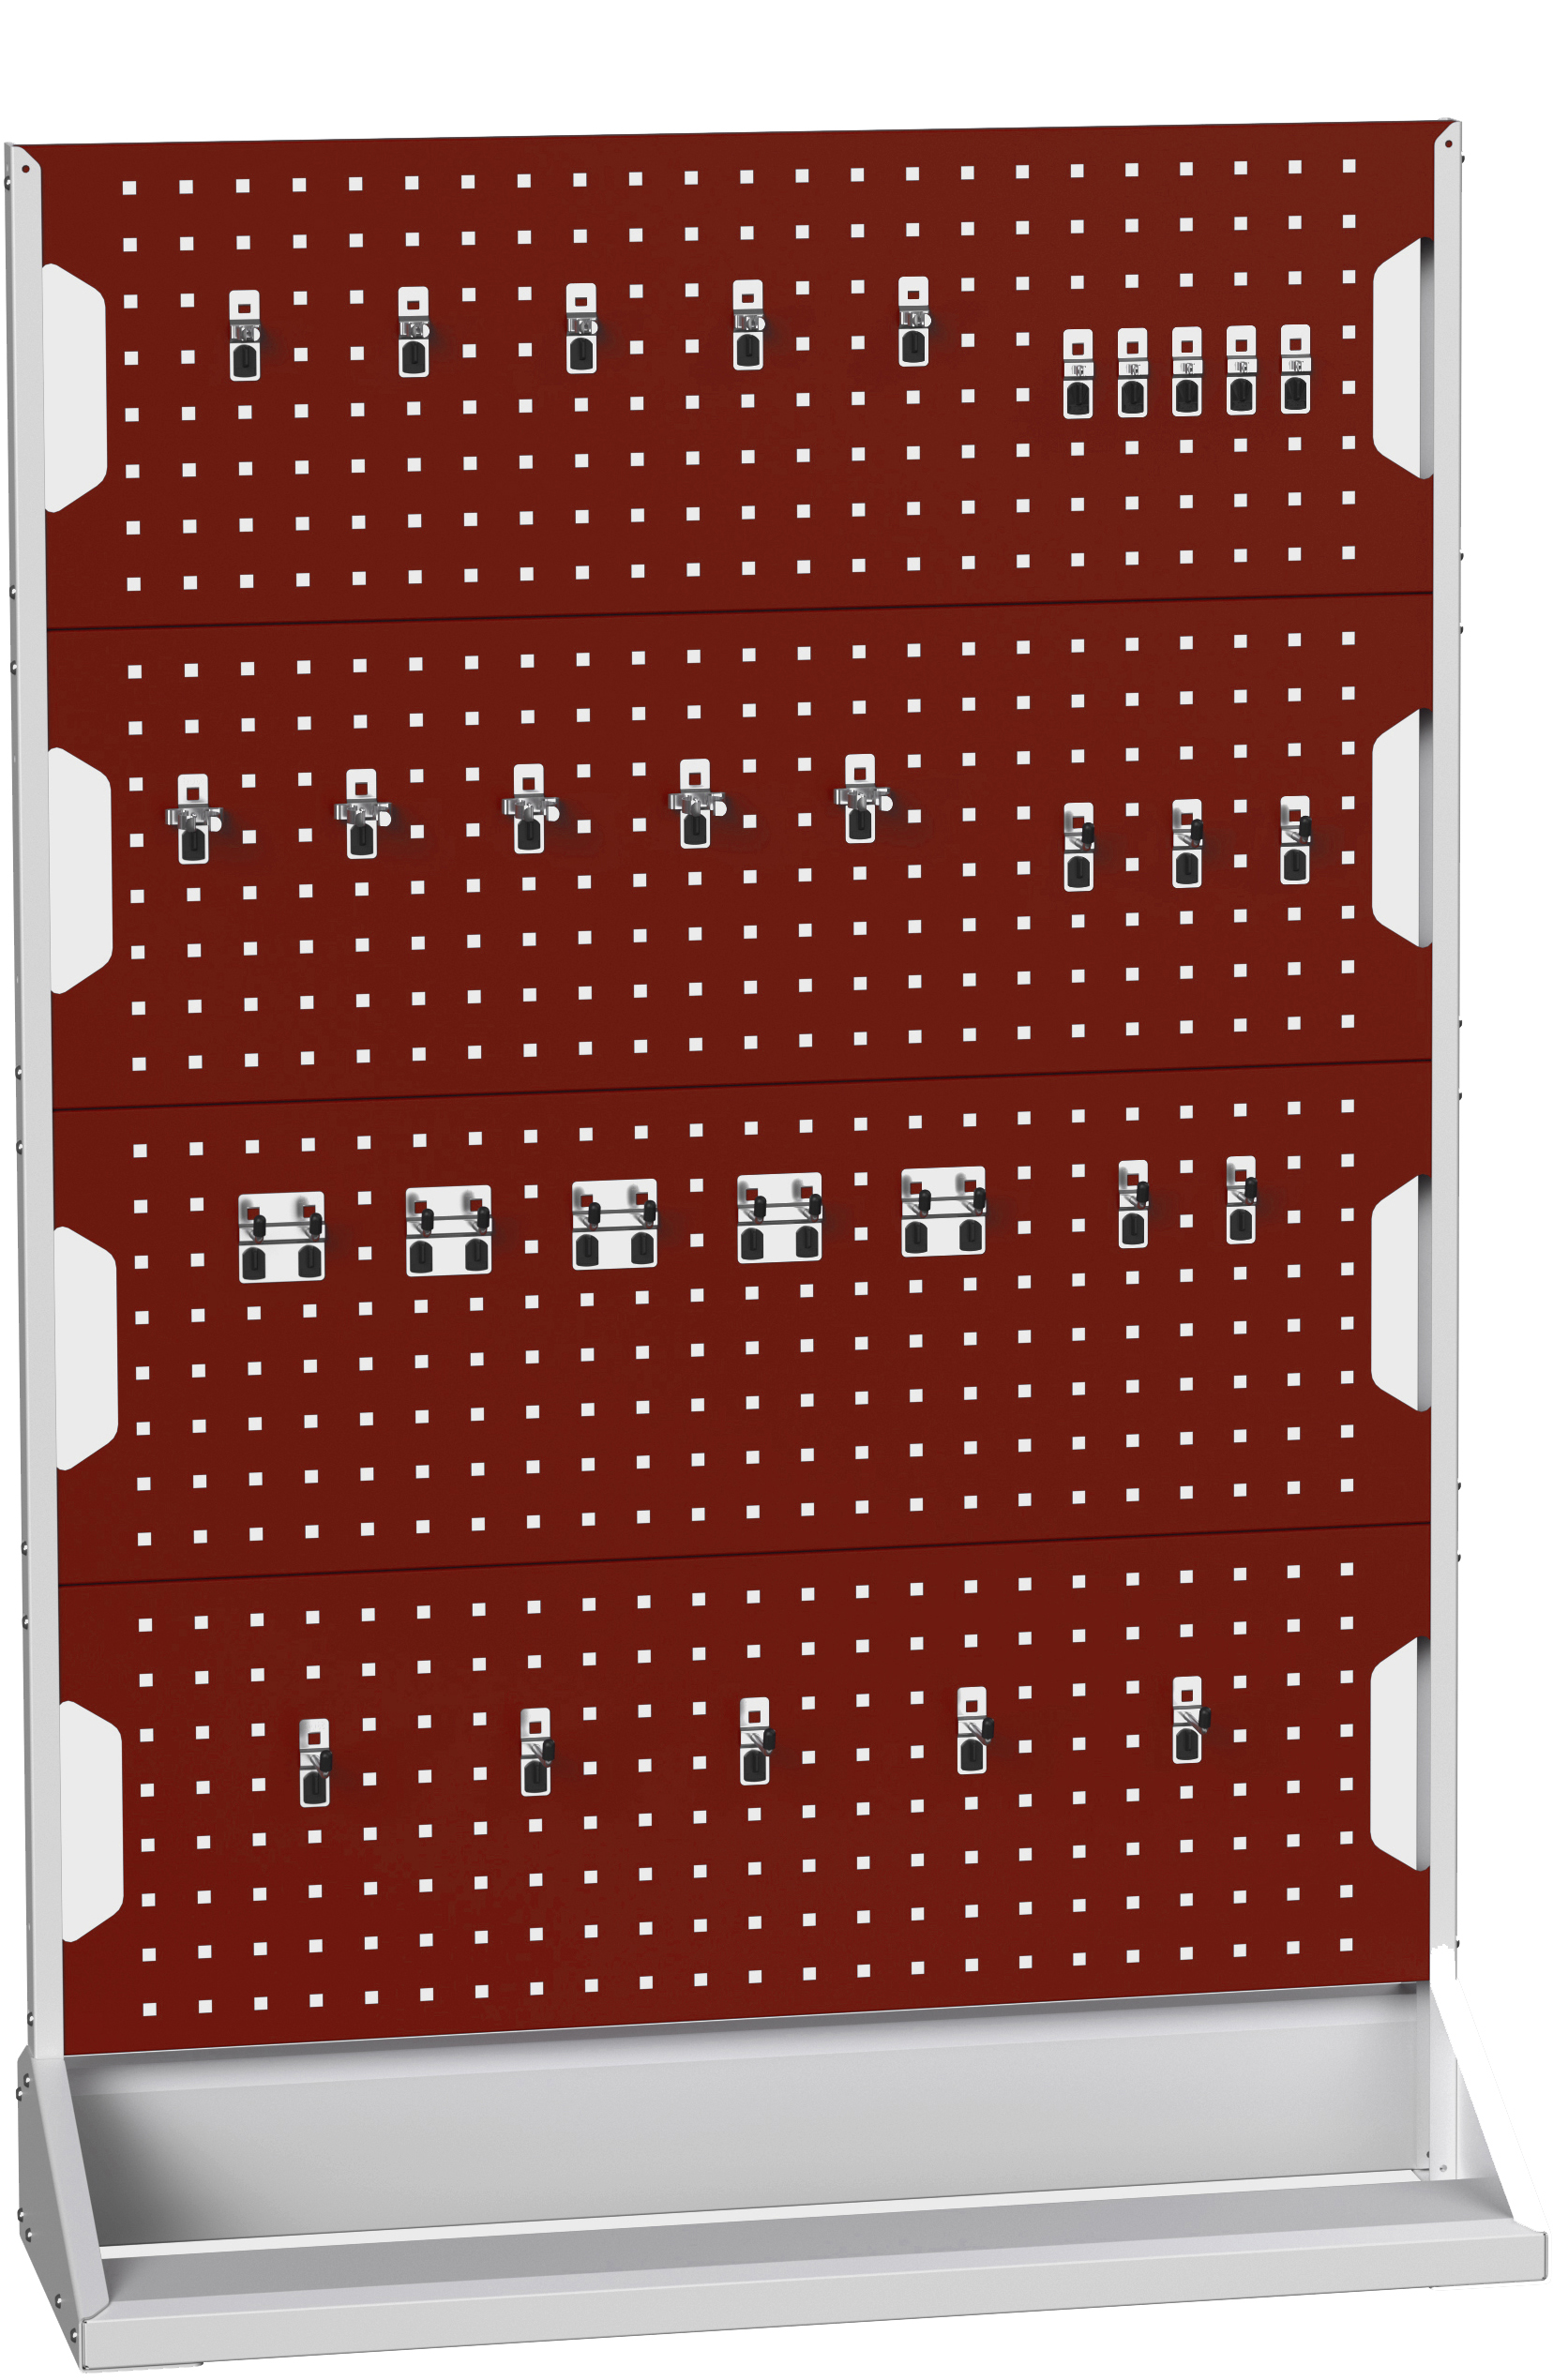 Bott Perfo Panel Rack (Single Sided) - 16917301.24V